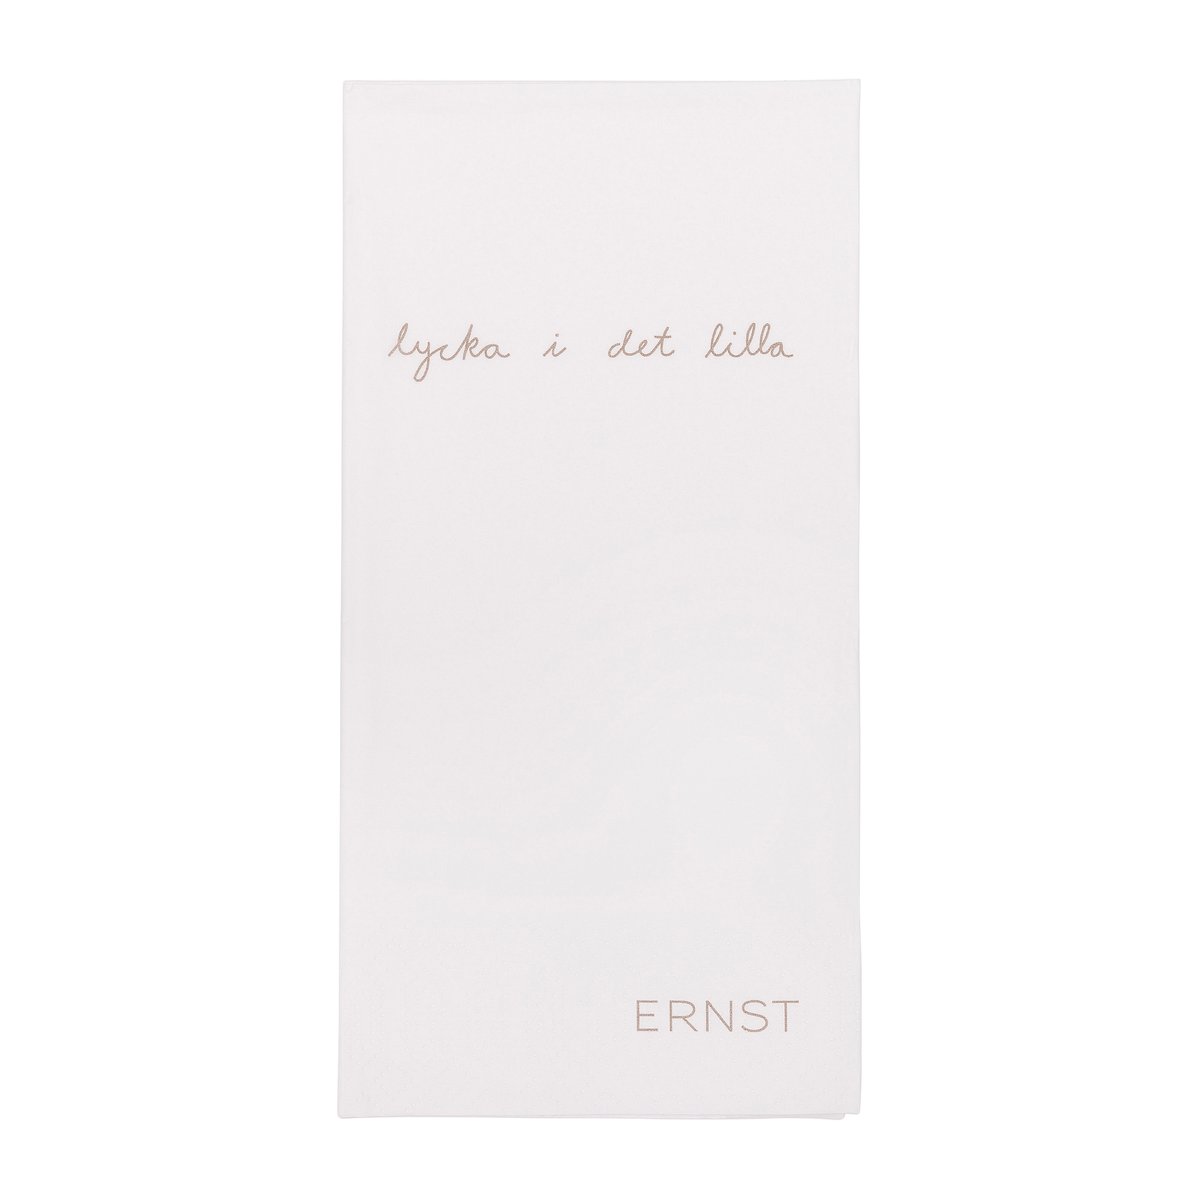 ERNST Ernst serviett med sitat «Lycka i det lilla» 20-pakning Hvit-grå